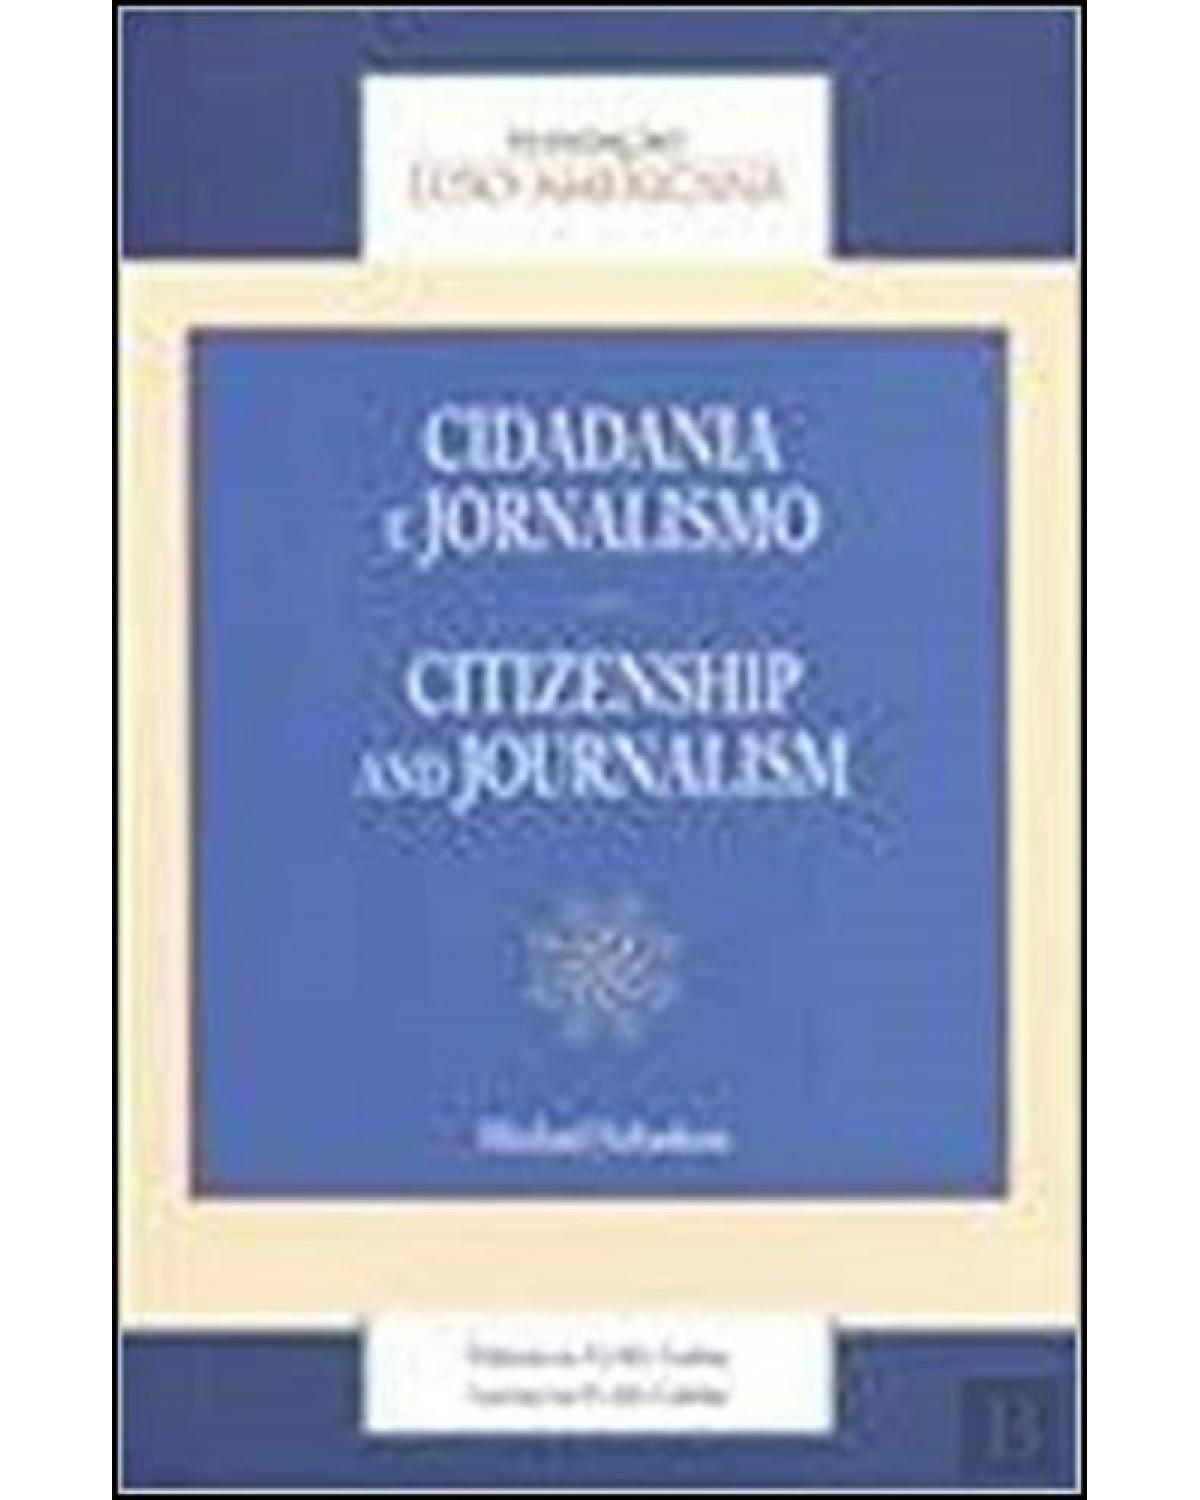 Cidadania e jornalismo - citizenship and journalism - 1ª Edição | 2010